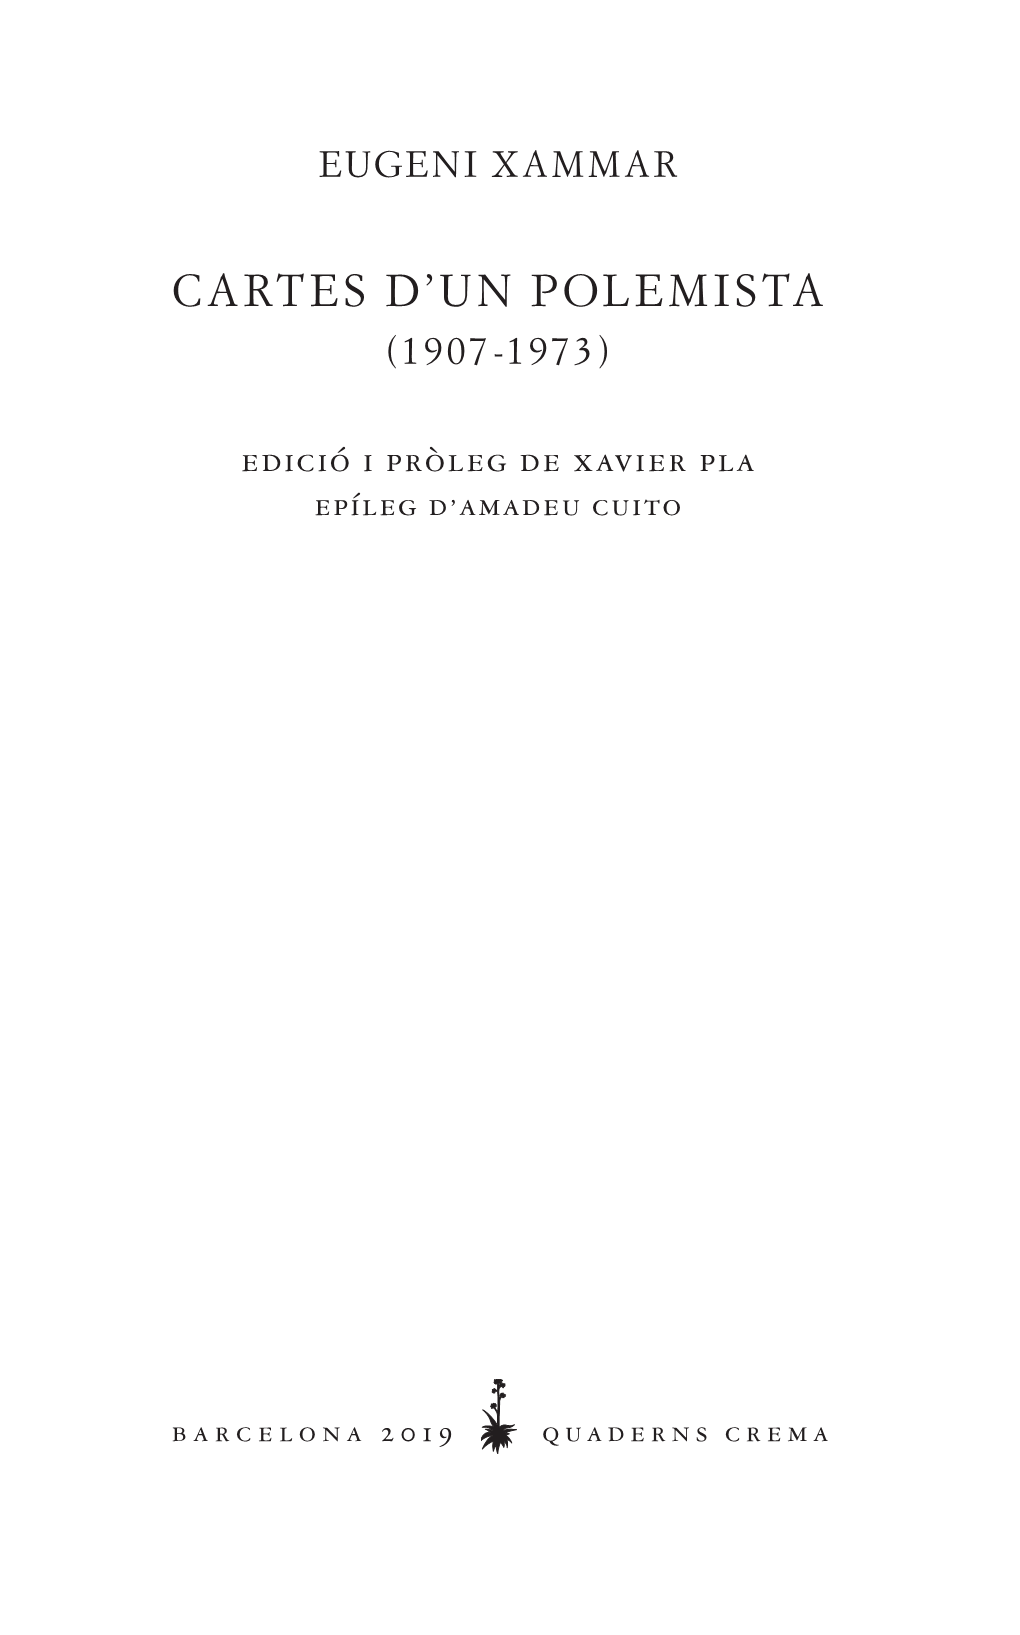 Cartes D'un Polemista (1907-1973) DDA0047 1Aed.Indd 3 2/5/19 13:19 Publicat Per Quaderns Crema Muntaner, 462 - 08006 Barcelona Tel